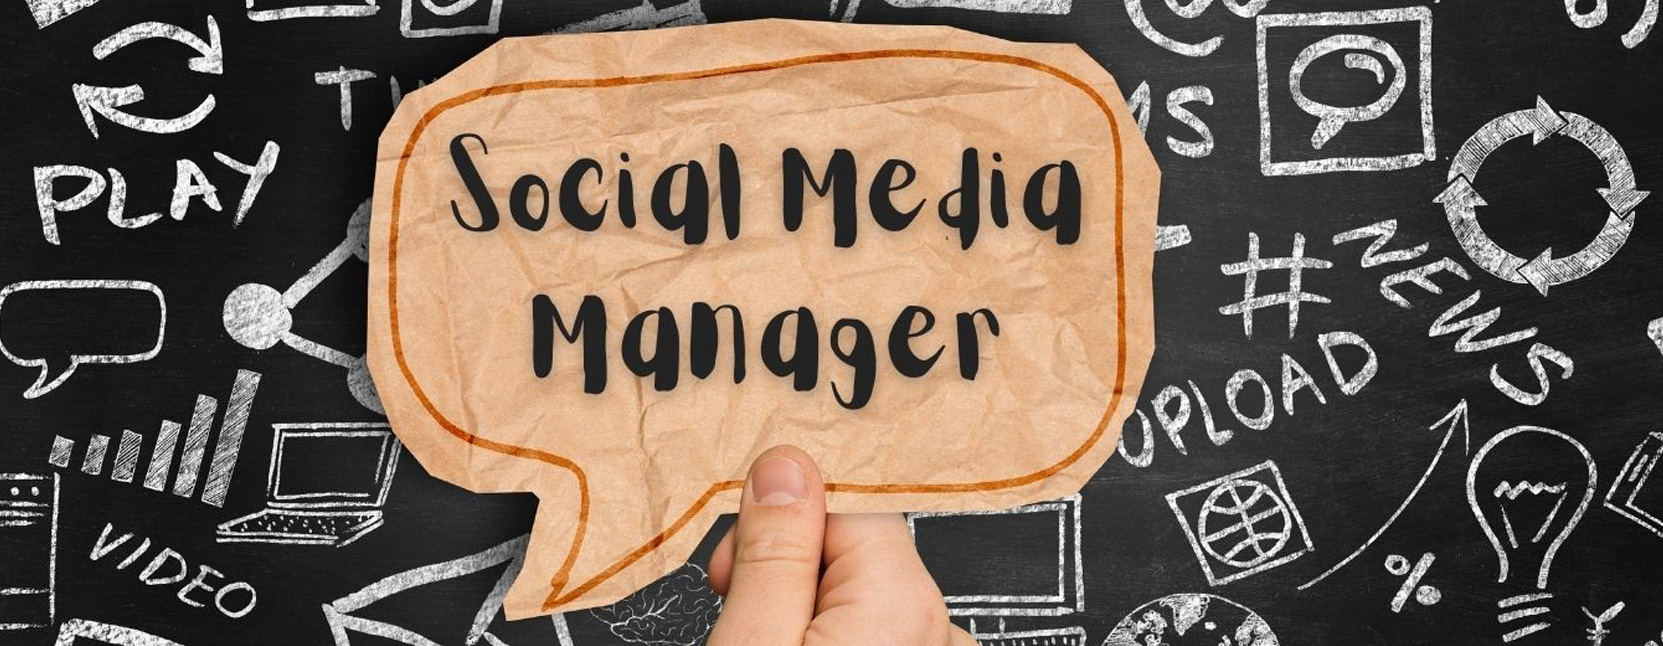 Social Media Manager - Chi è, cosa fa, come lo fa